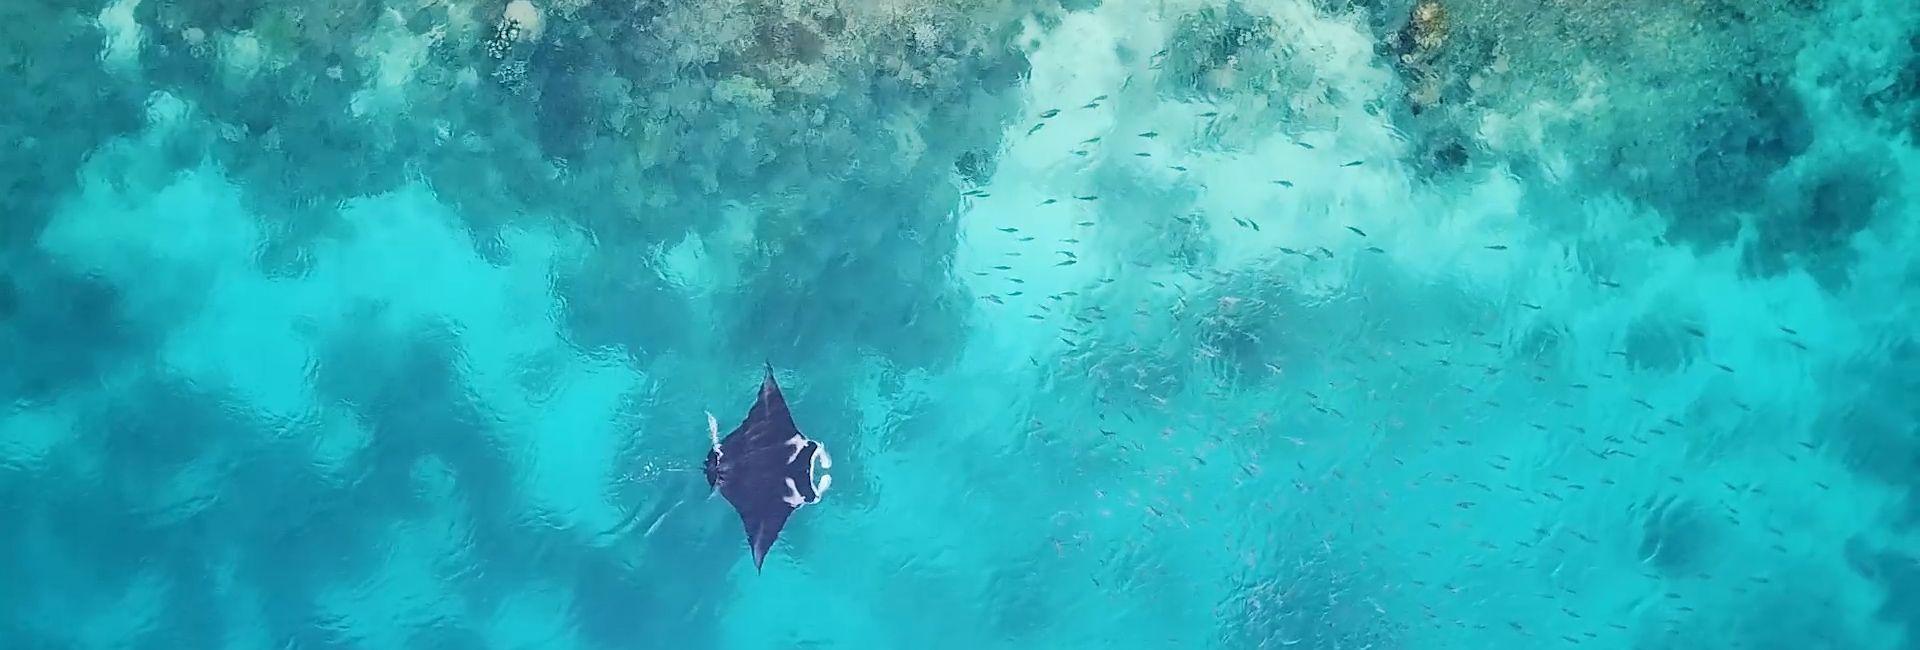 Raja Ampat Diving Project - Magical Manta Ray Moments!